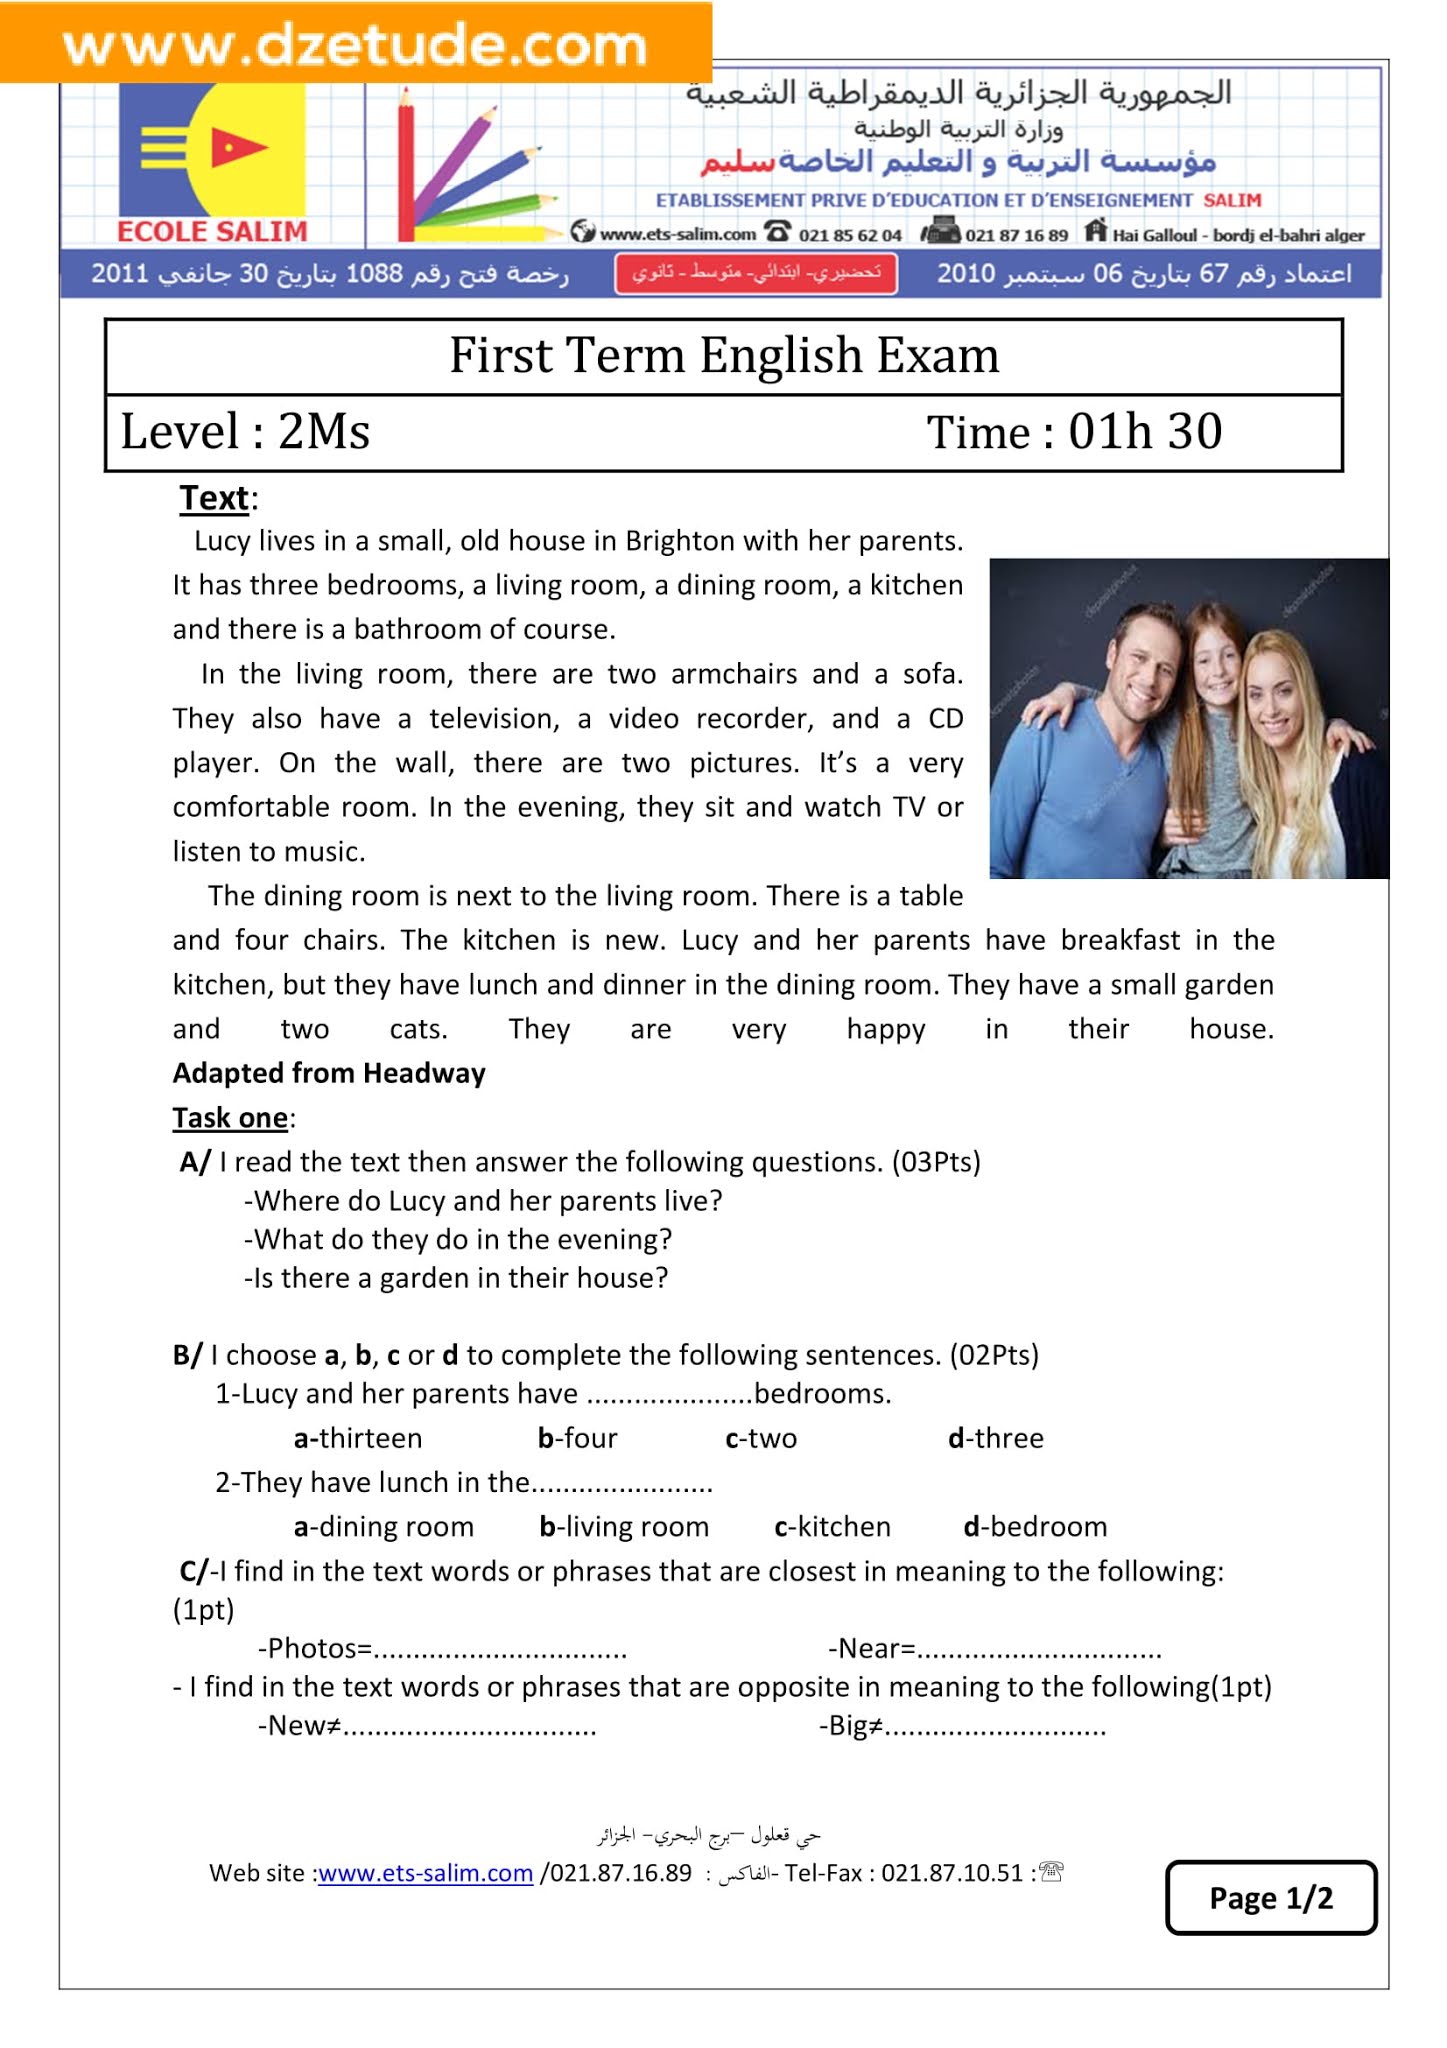 إختبار اللغة الانجليزية الفصل الأول للسنة الثانية متوسط - الجيل الثاني نموذج 6